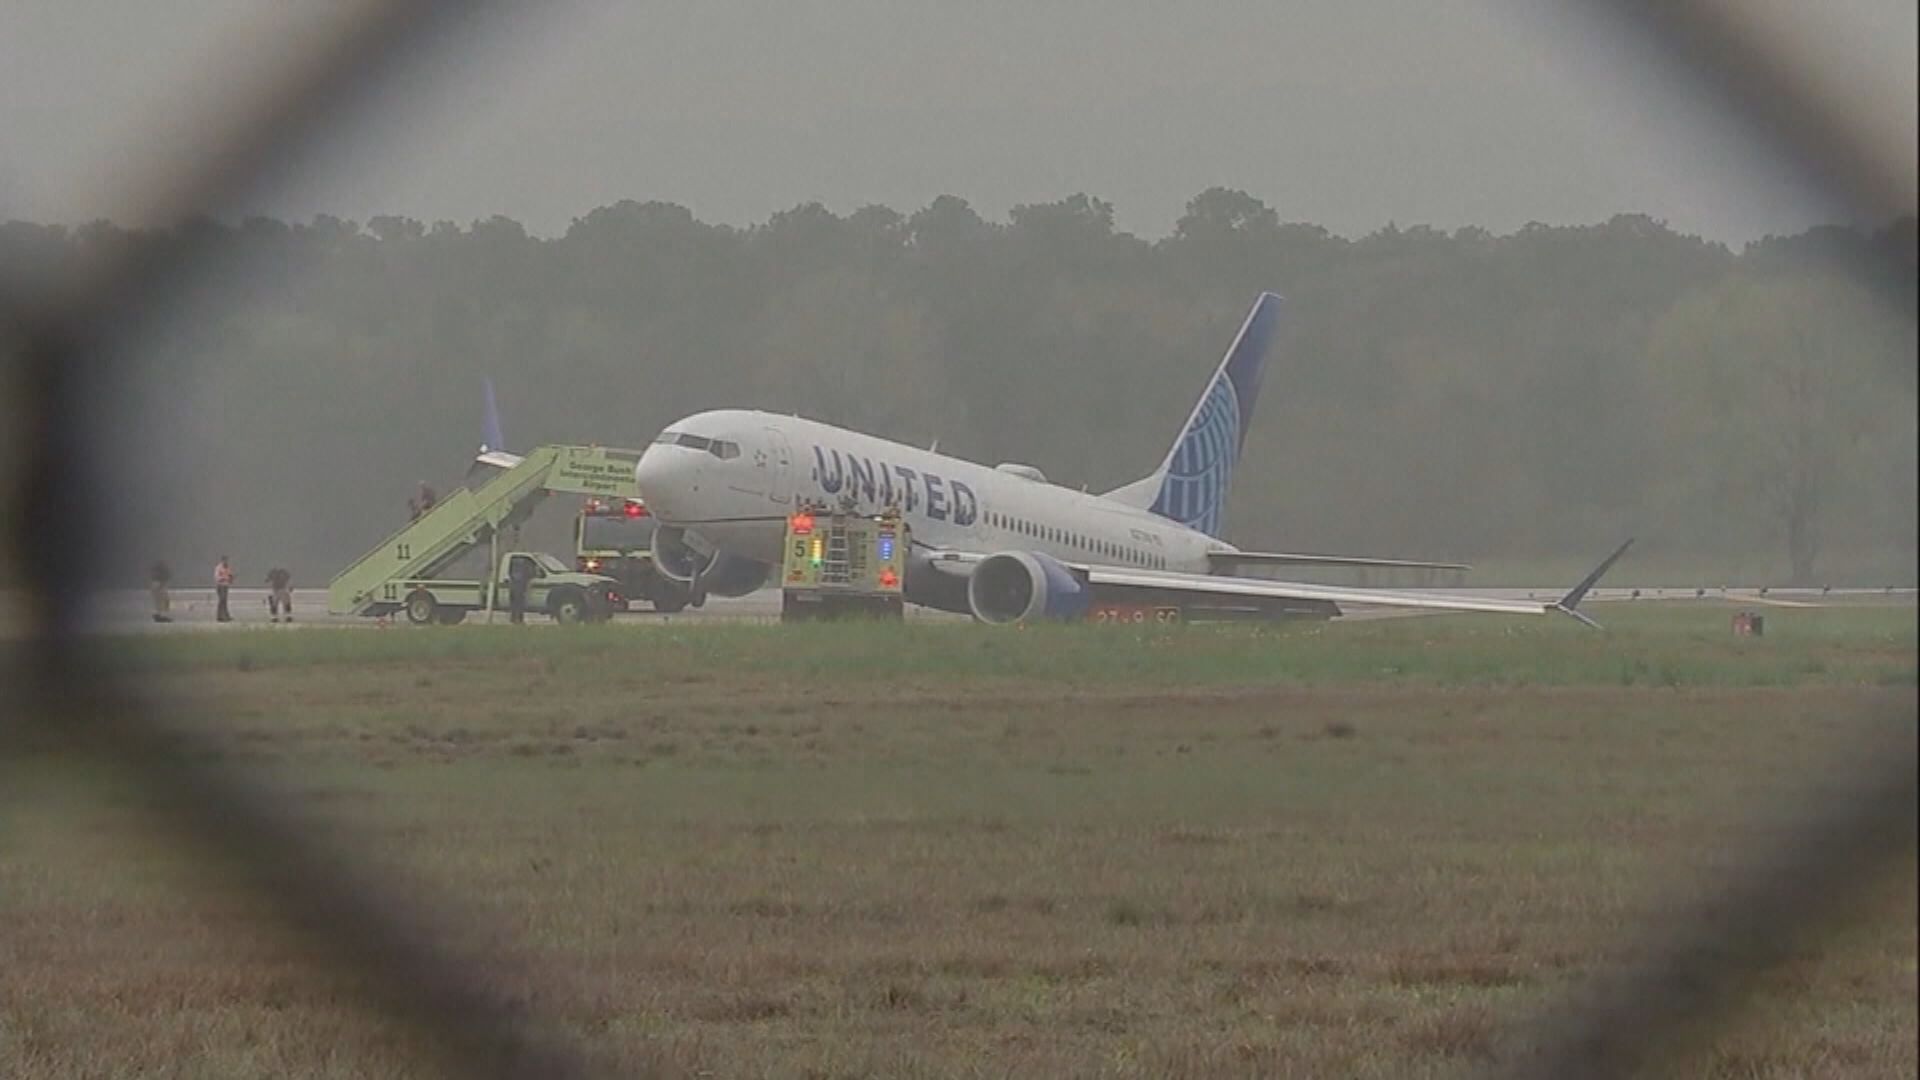 聯合航空波音737 MAX 8客機於休斯敦機場衝出跑道